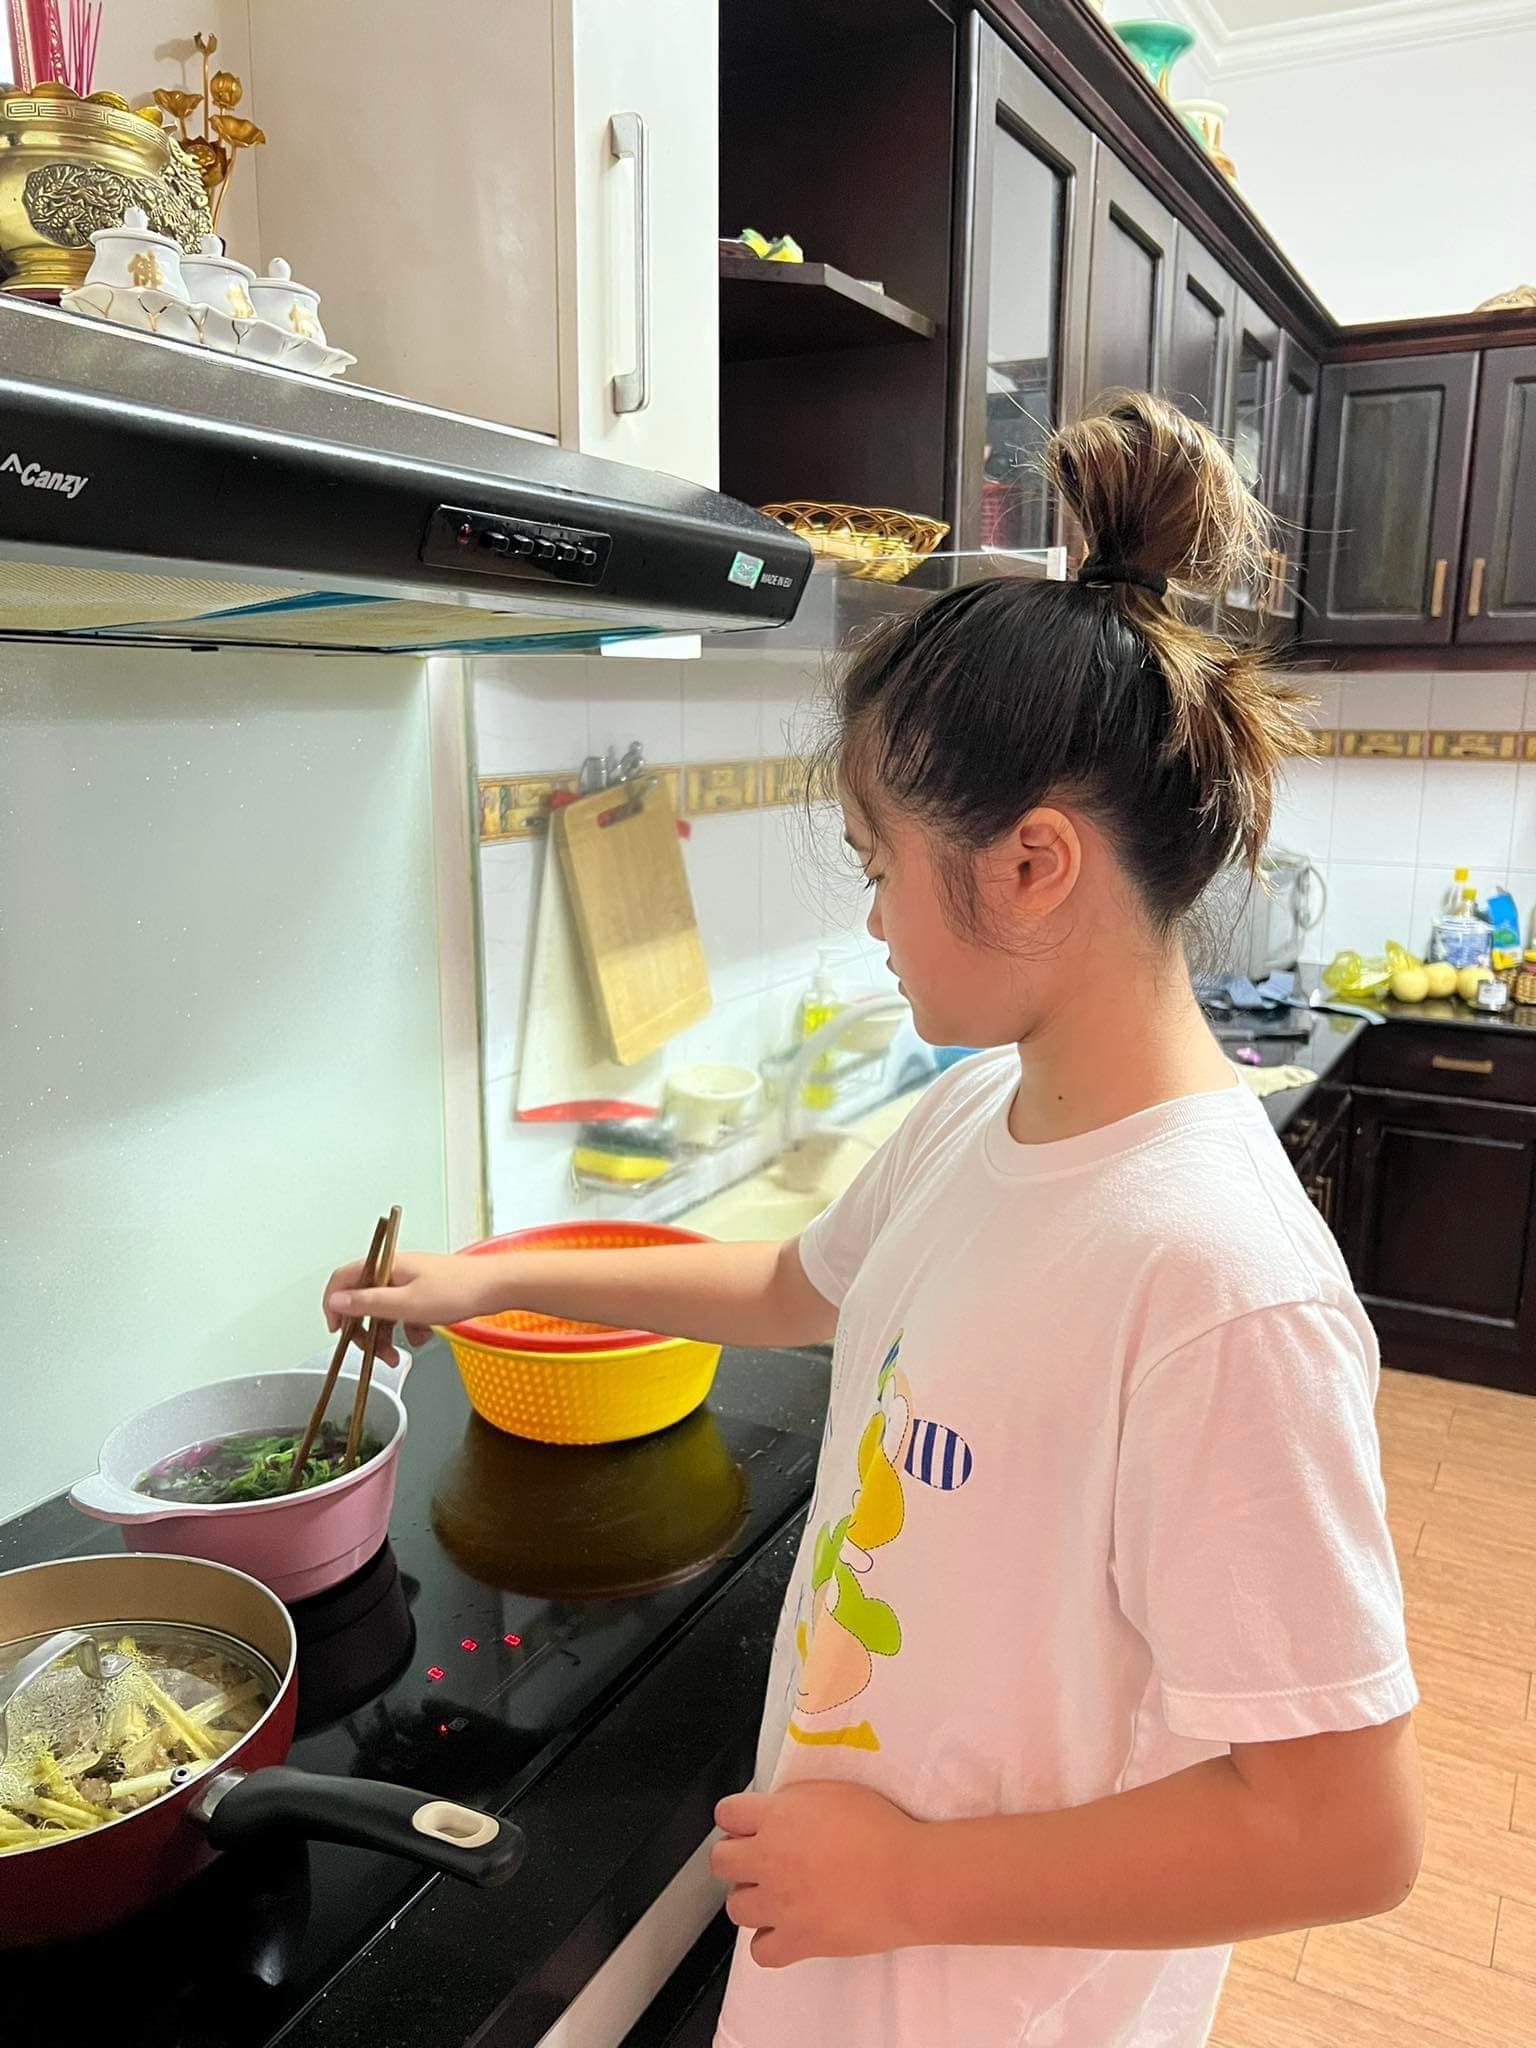 Thúy Nga 'khoe' con gái 11 tuổi biết tự nấu ăn, phụ giúp việc nhà và học hành chăm chỉ